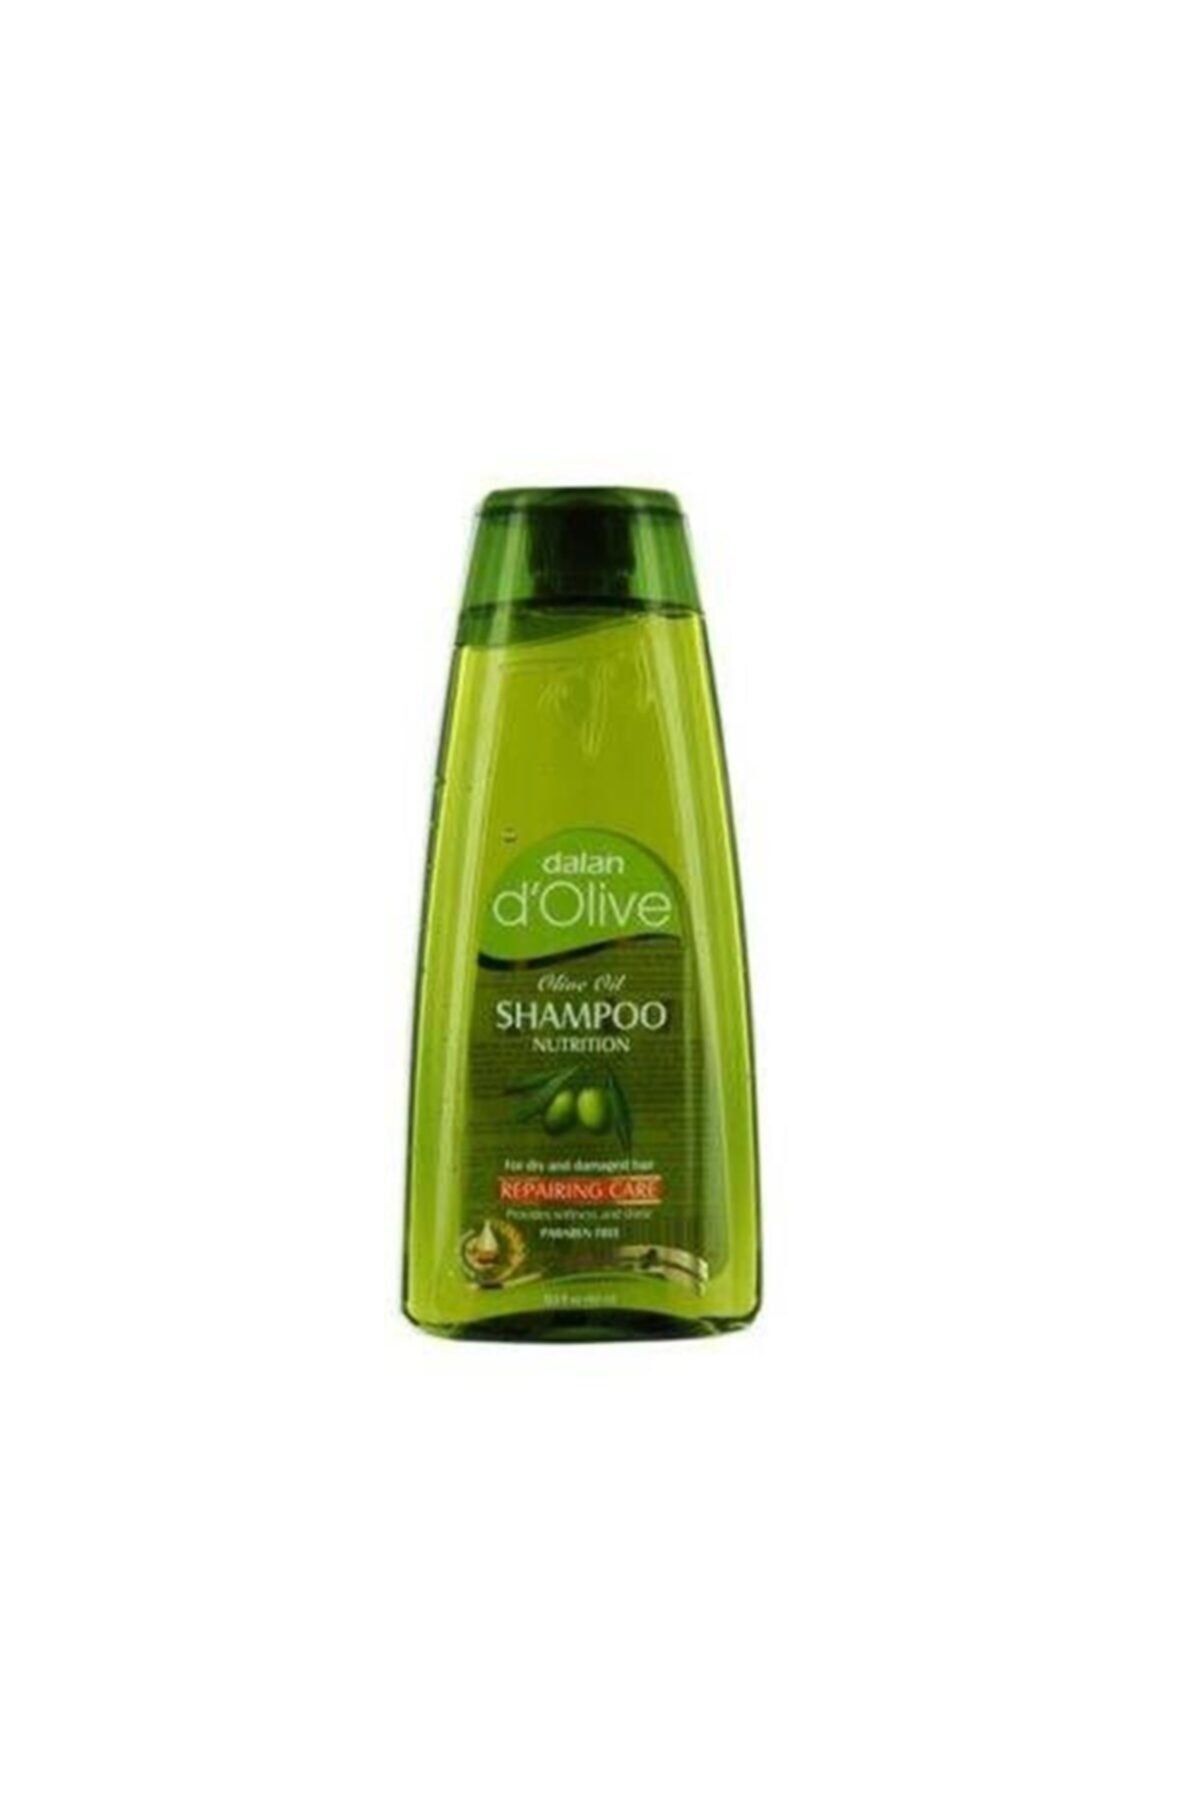 Dalan DOlive Boyalı Saçlar için Şampuan 400ml ( 1 ADET )